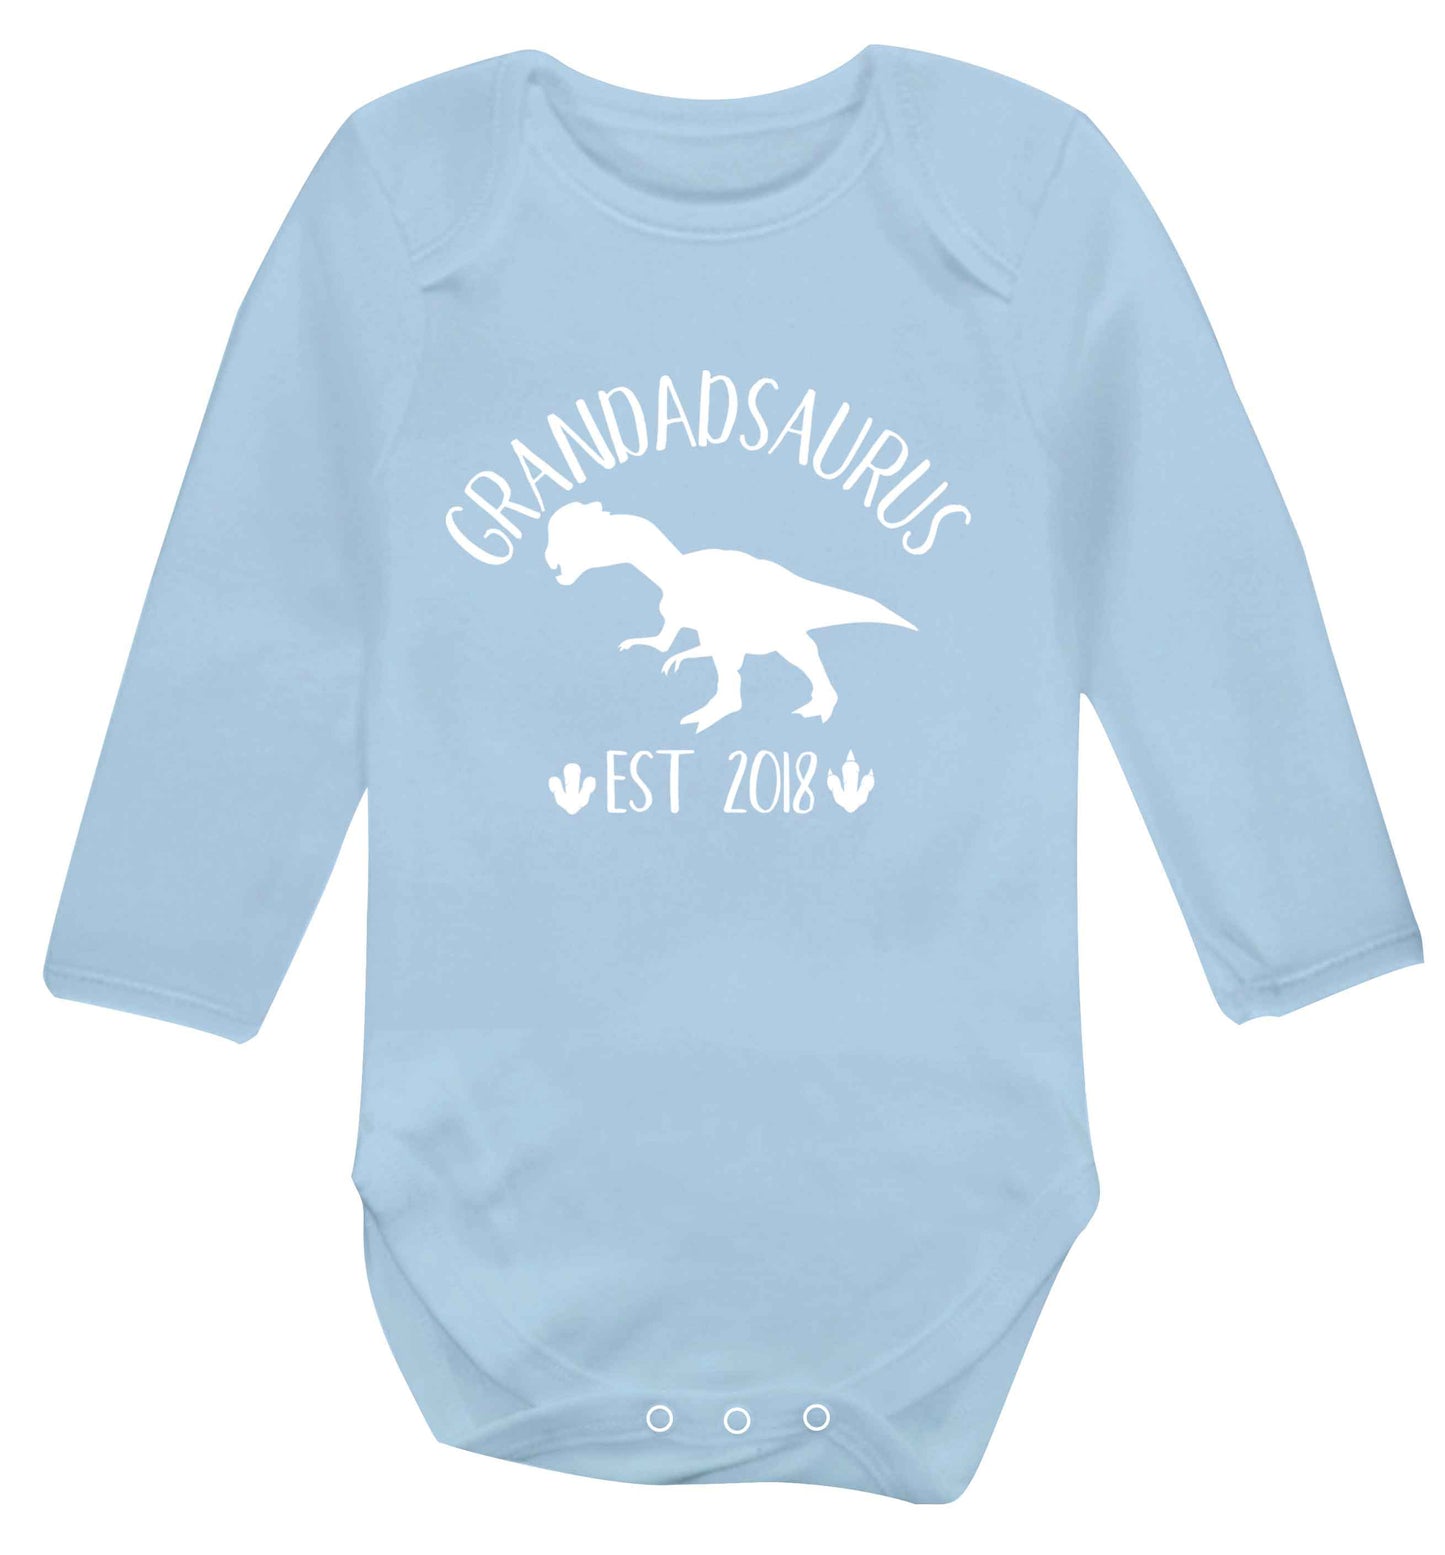 Personalised grandadsaurus since (custom date) Baby Vest long sleeved pale blue 6-12 months